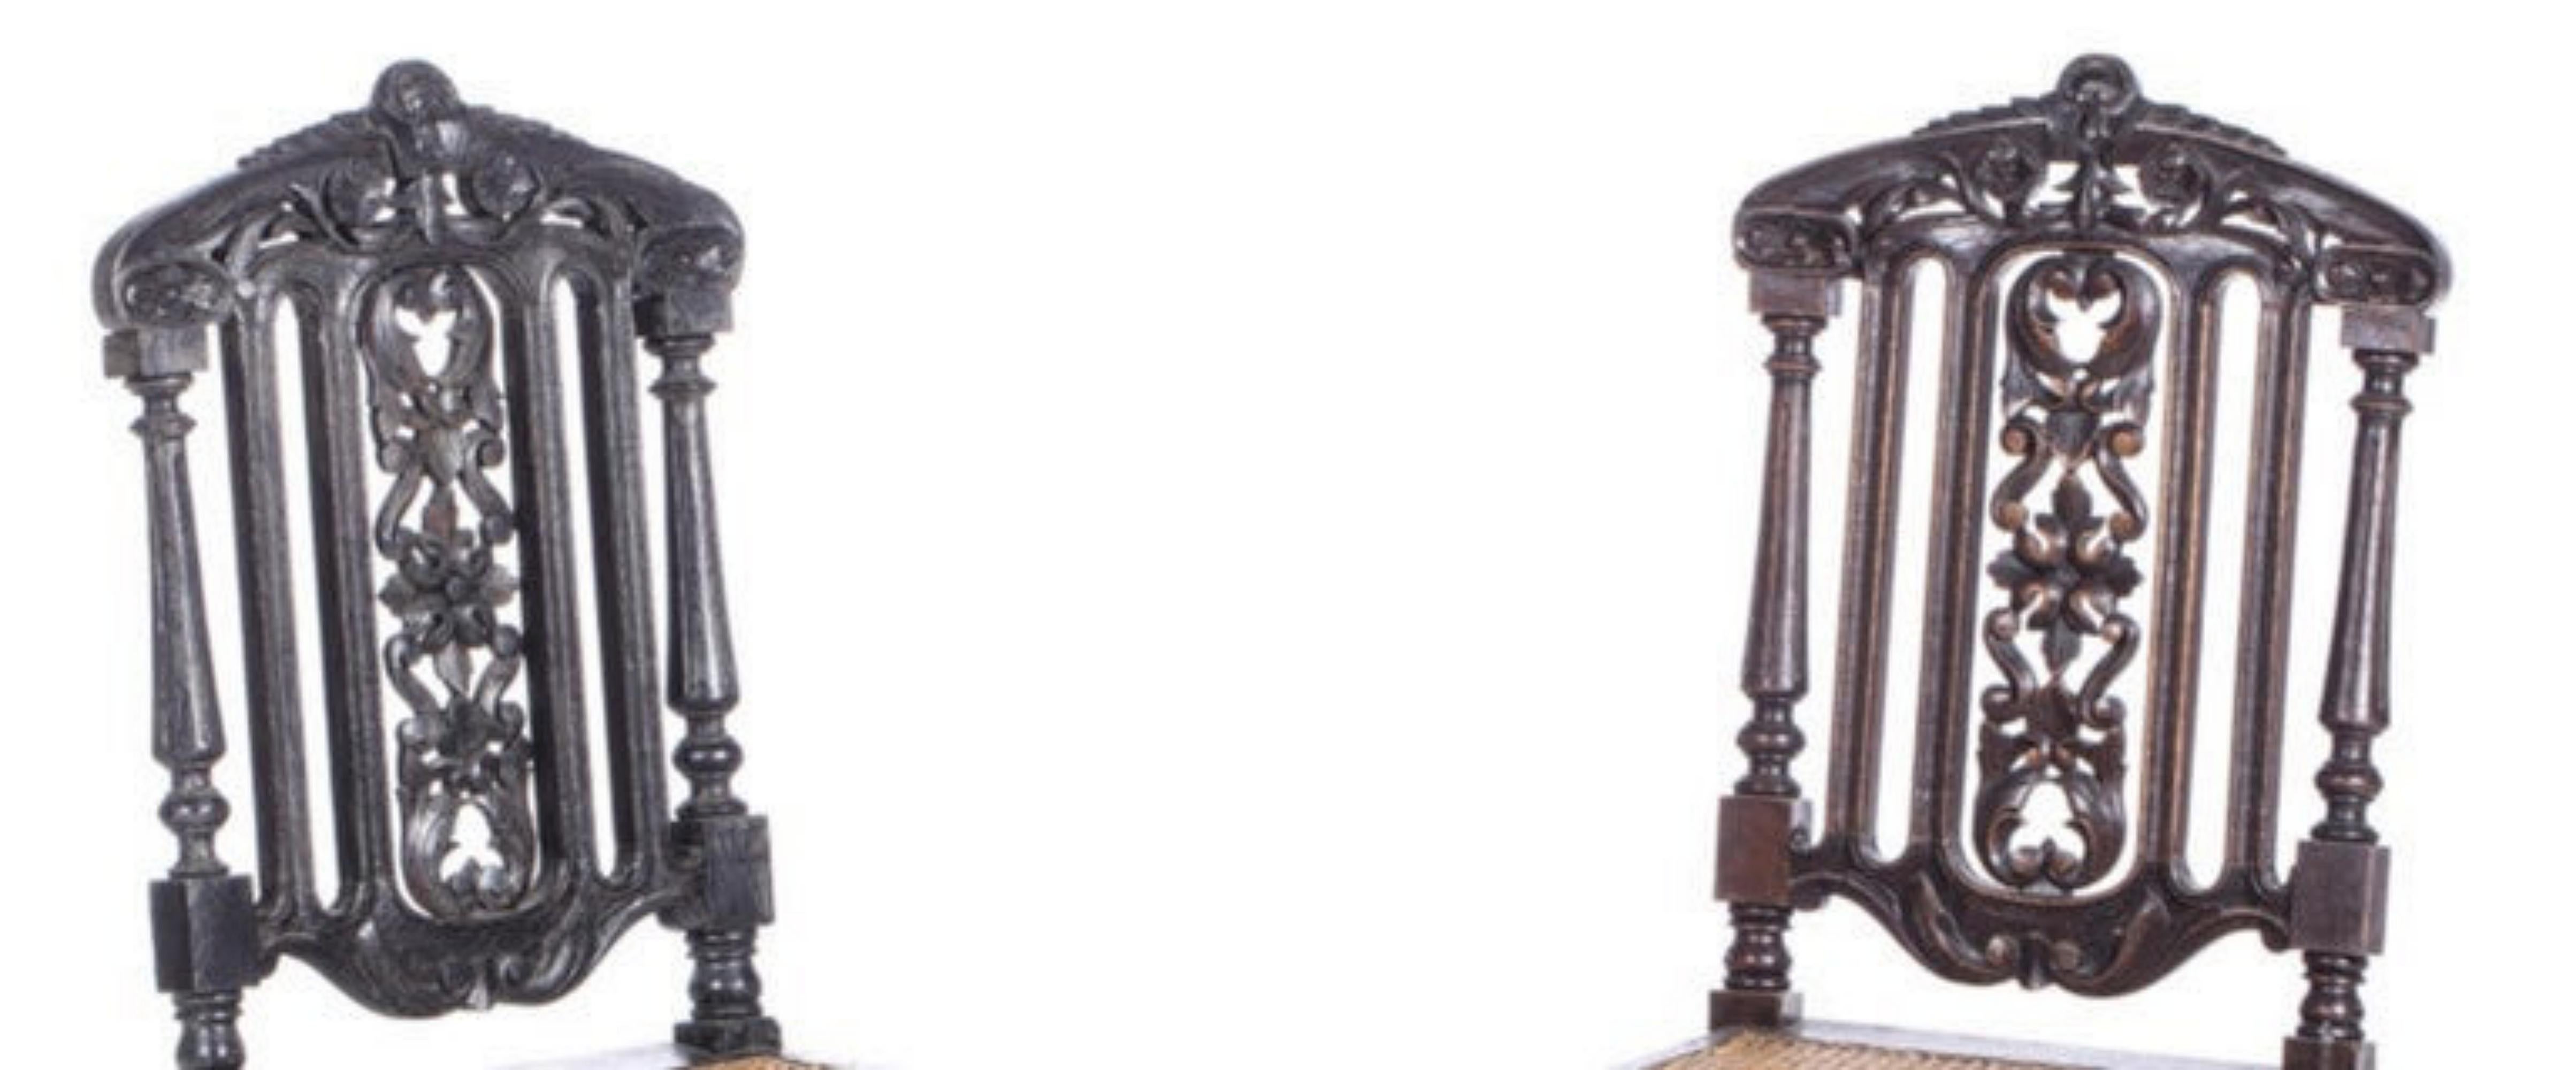 Paire de chaises romantiques
19ème siècle
En bois de chêne sculpté, dossier creux, assise cannée. Décoré de motifs végétaux.
Signes d'utilisation.
Dimensions : 101 x 47 x 42 cm.